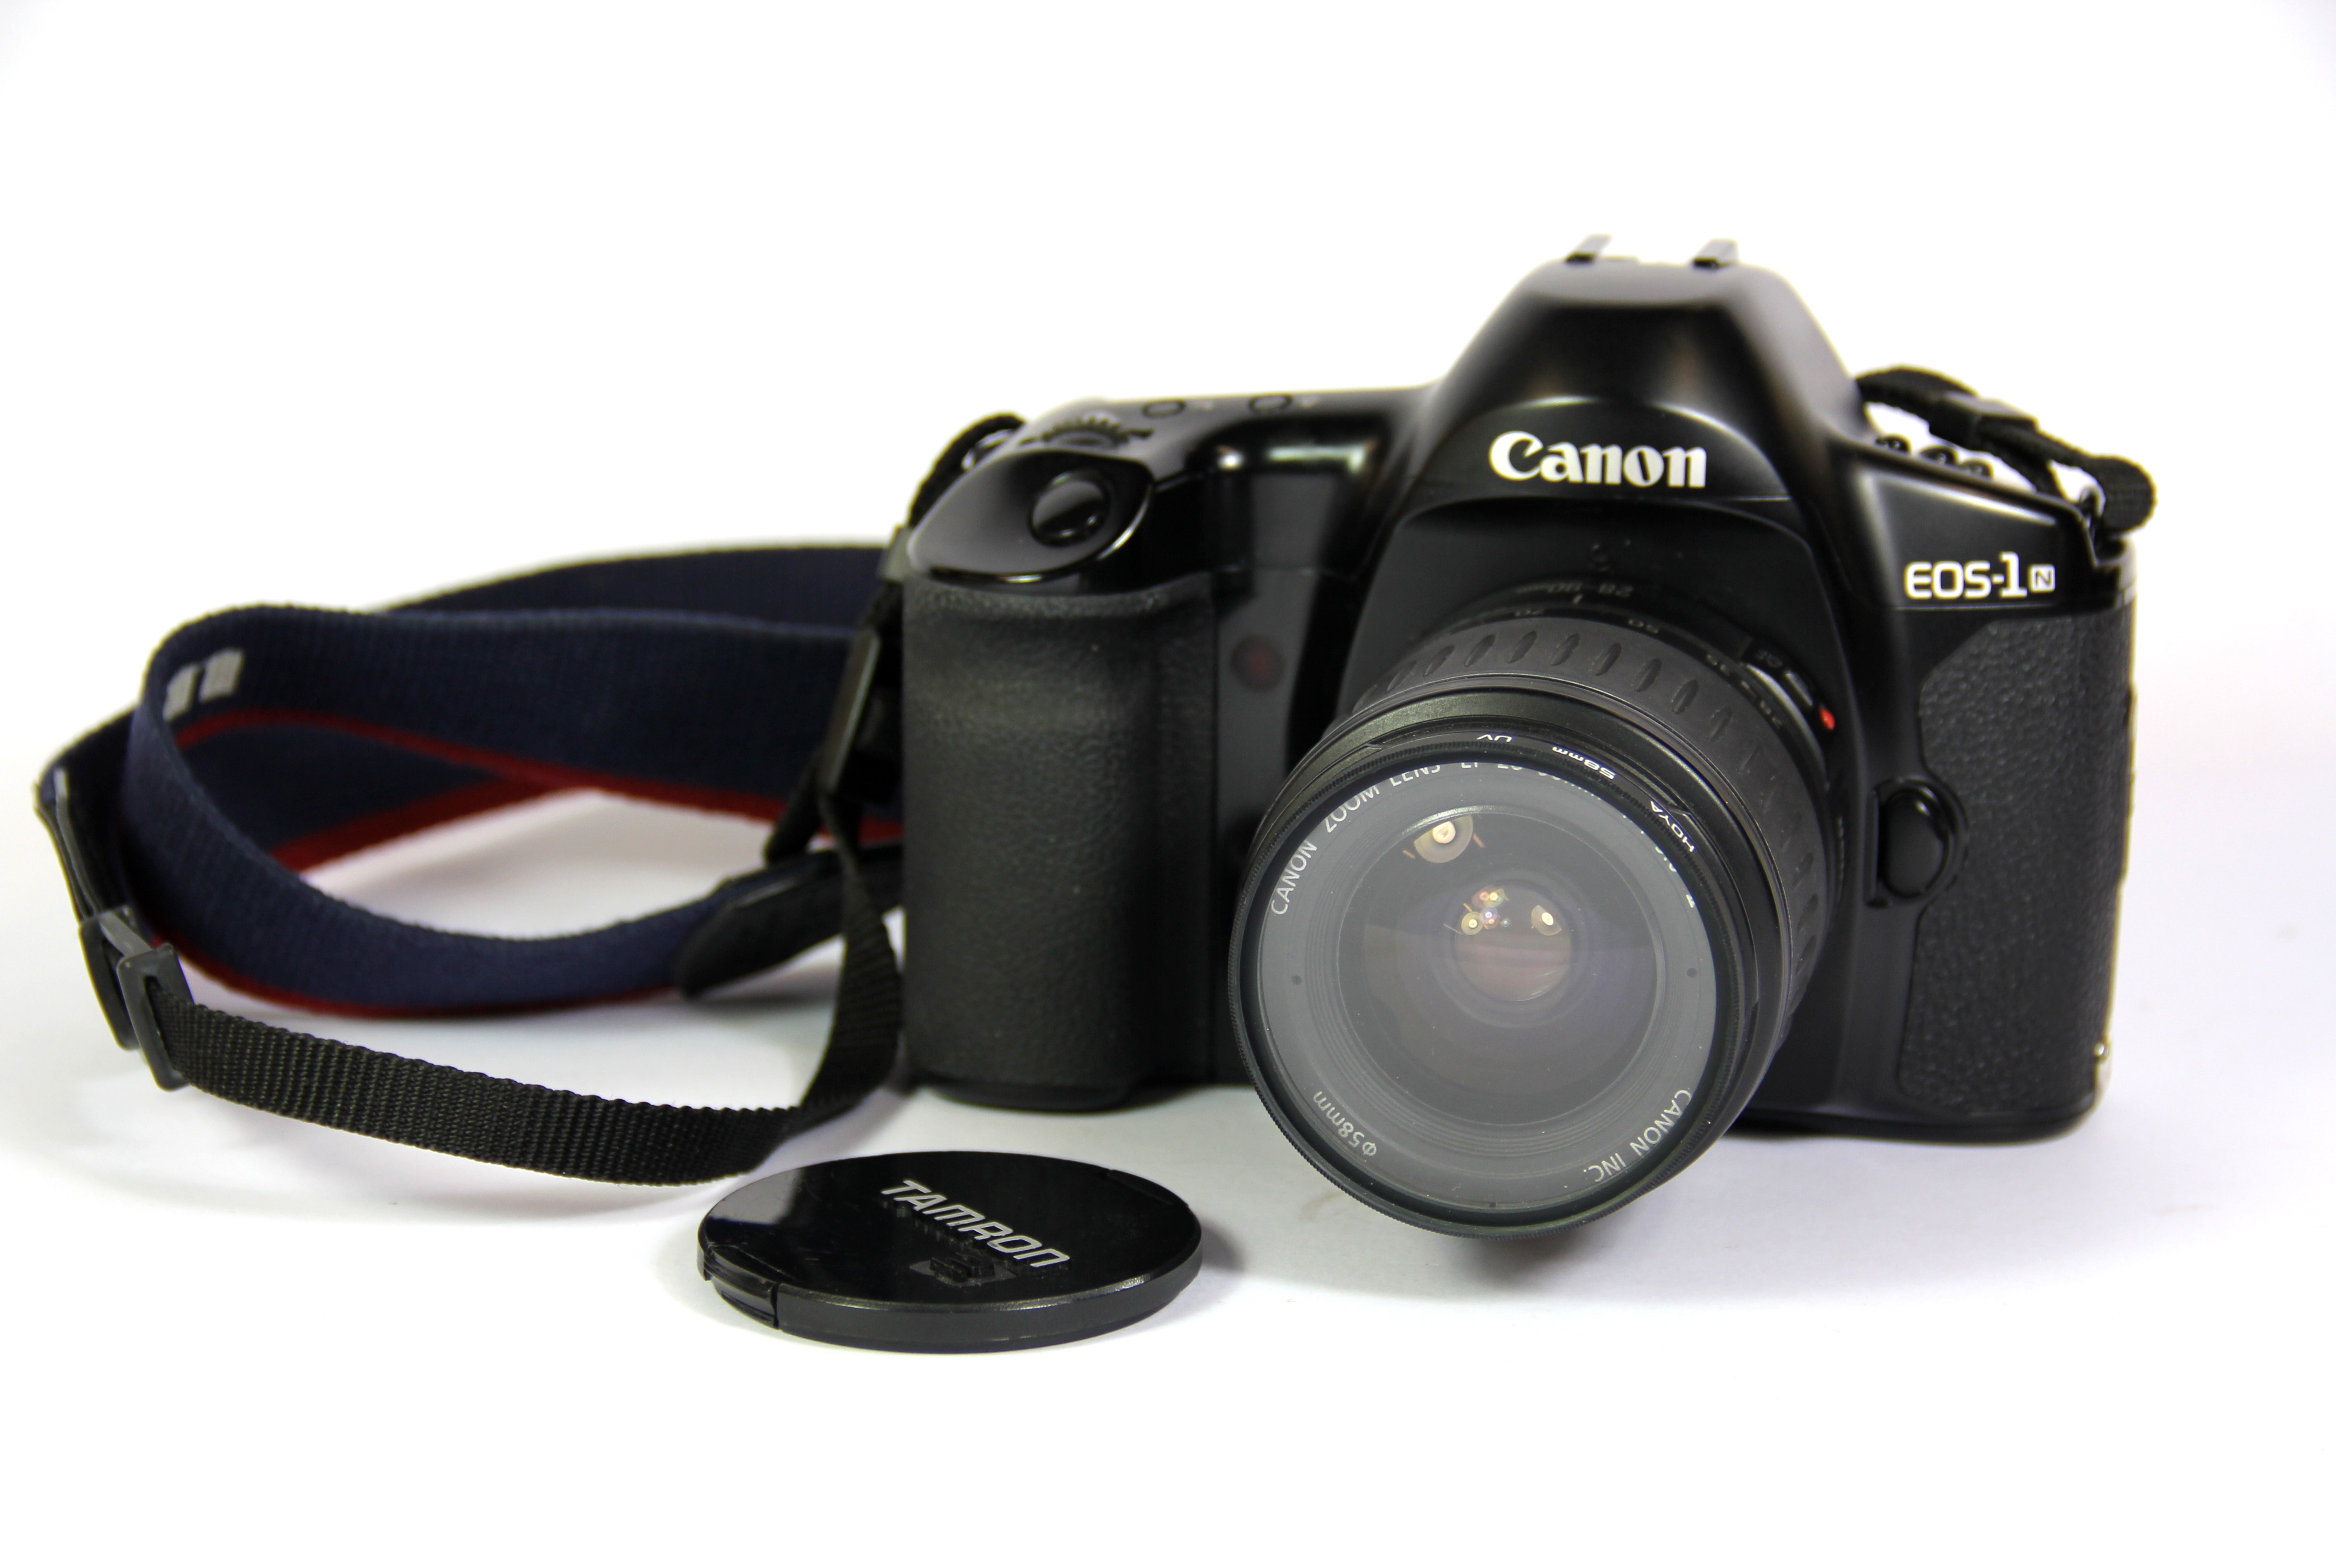 A Canon EOS-1 single lens reflex digital camera with Canon zoom lens.